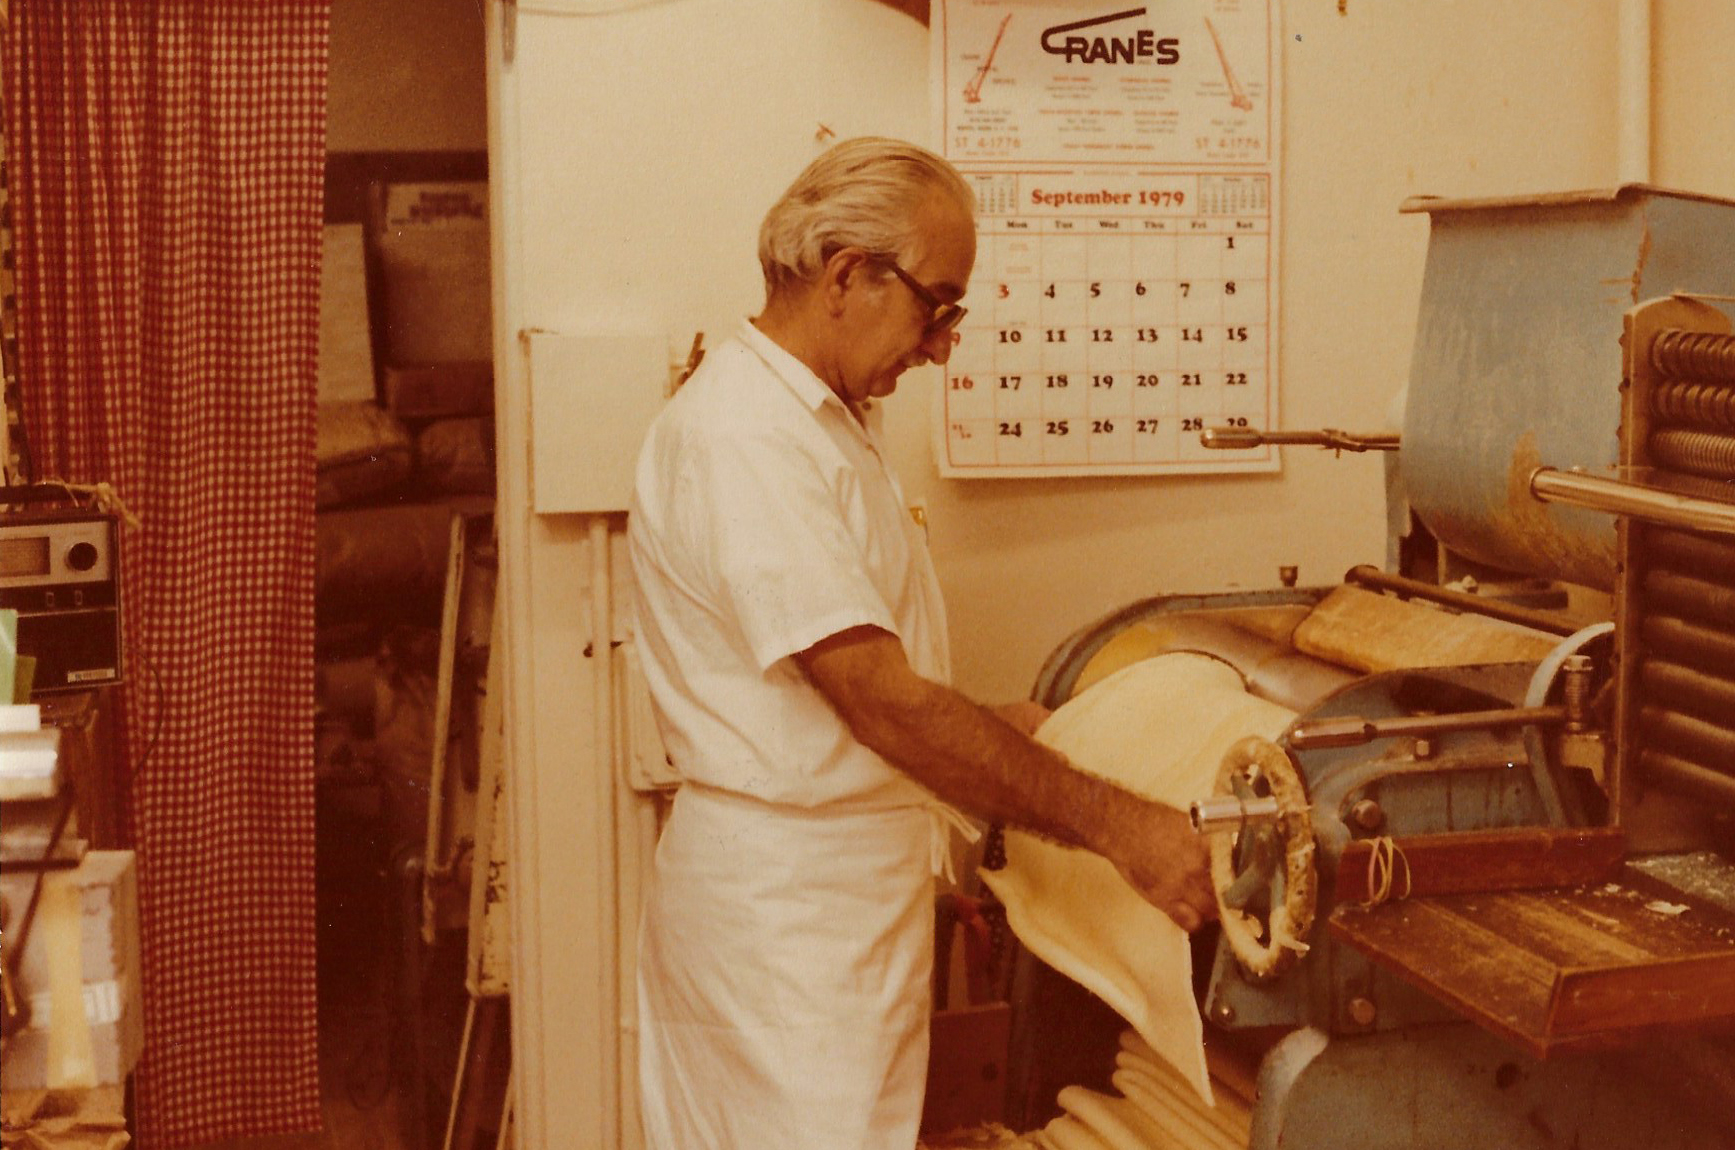 Mario Borgatti making pasta